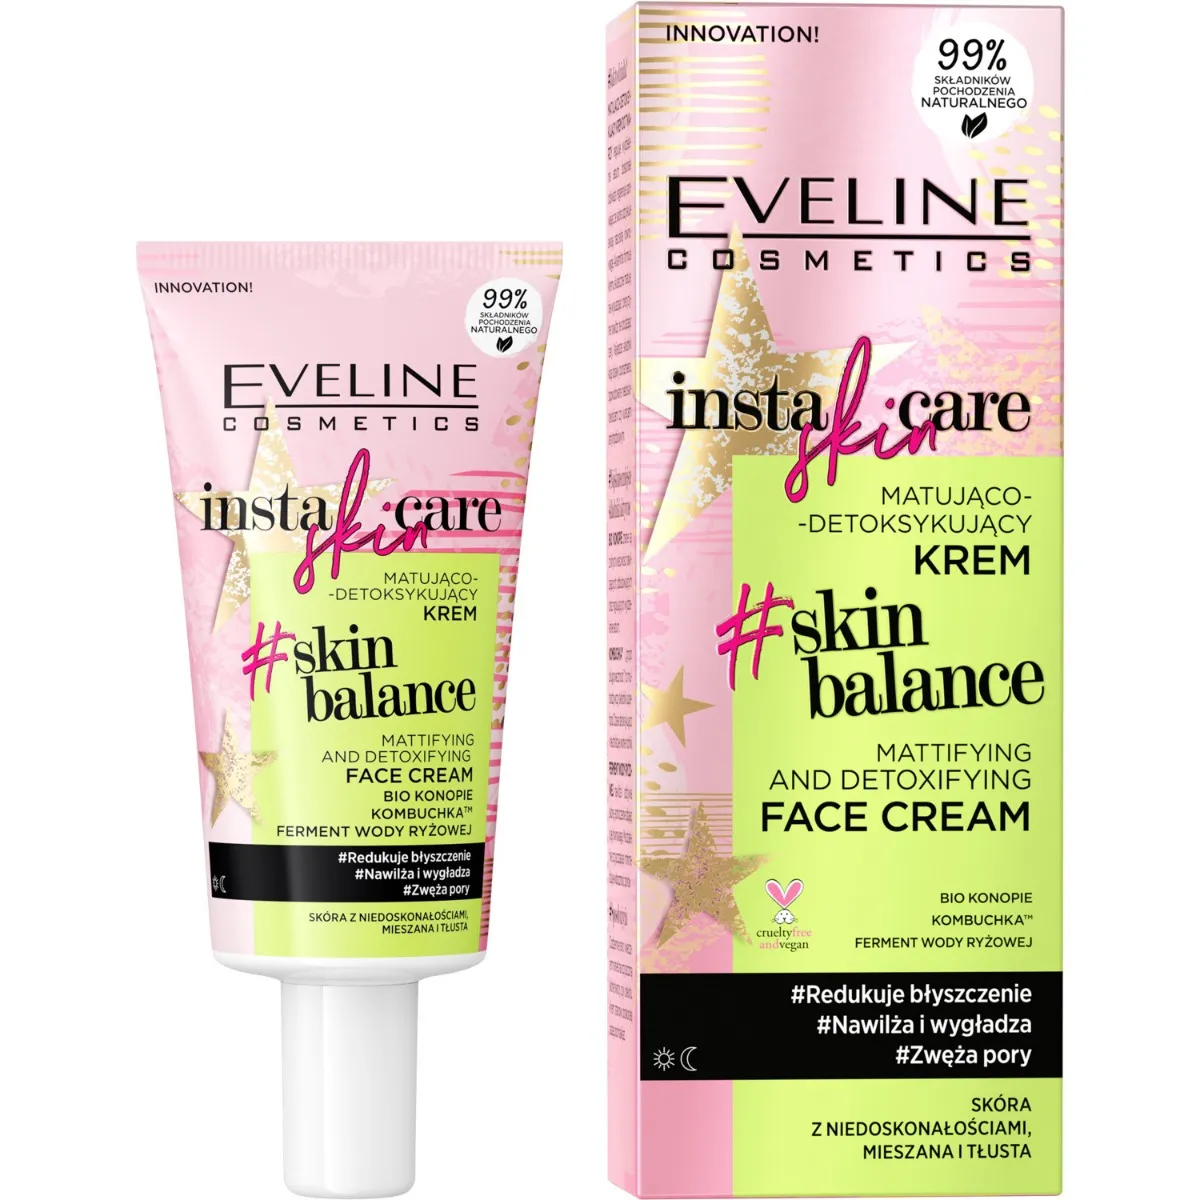 Eveline Cosmetics Insta Skin Care krem do twarzy matująco-detoksykujący, 50 ml